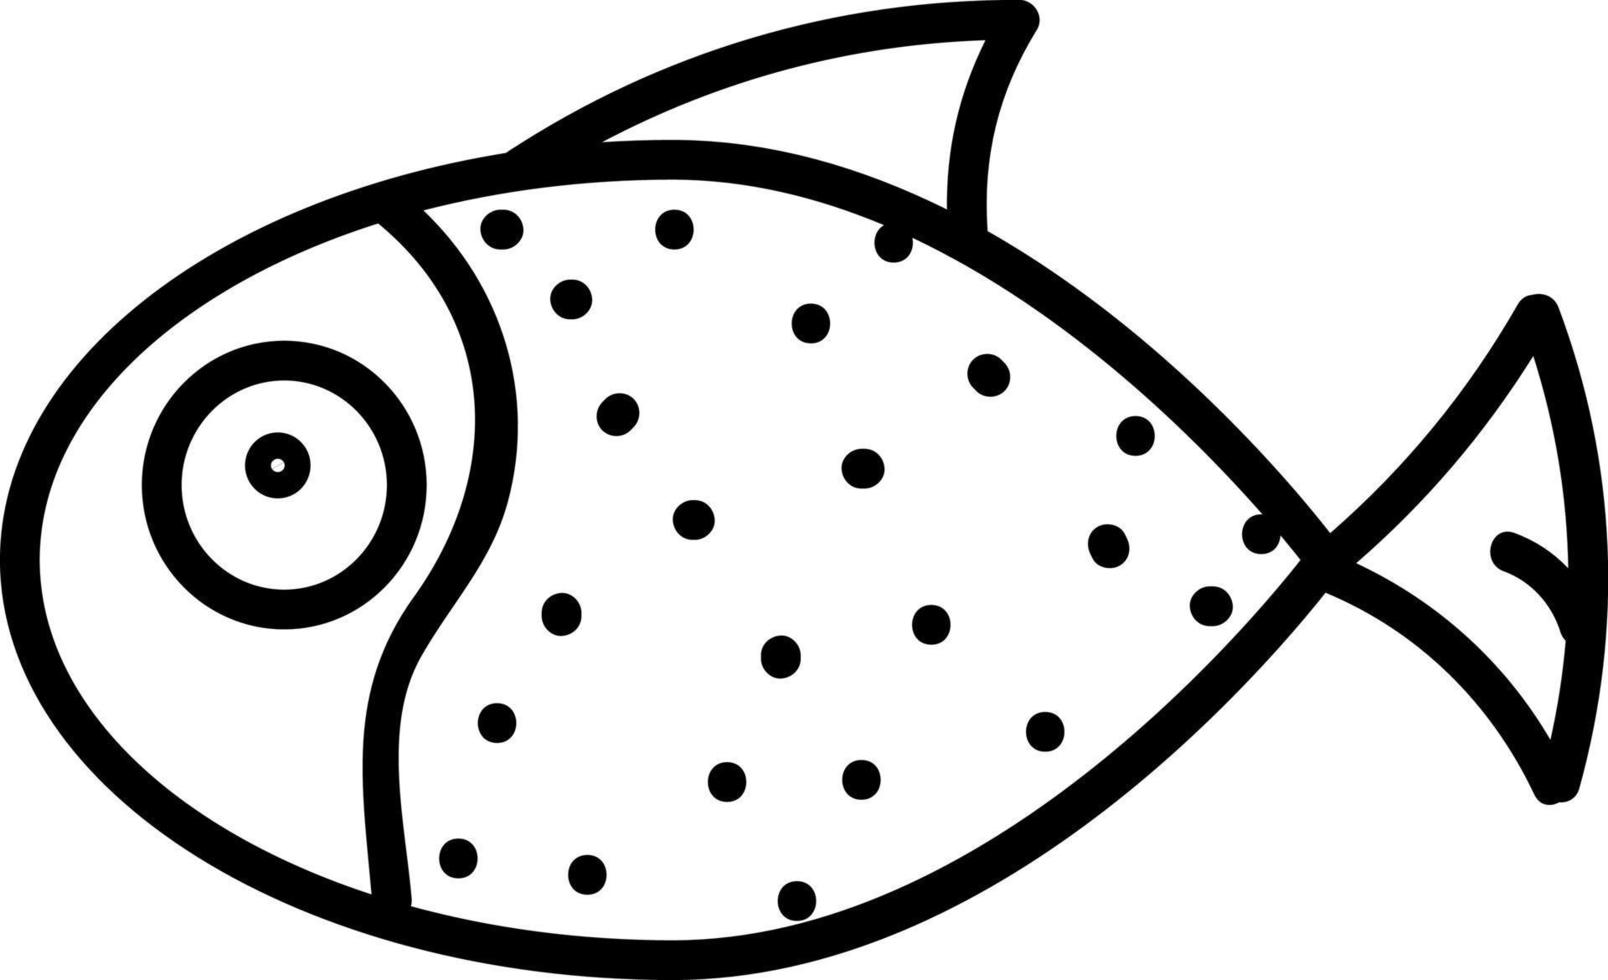 poisson blanc à pois noirs, illustration, vecteur sur fond blanc.